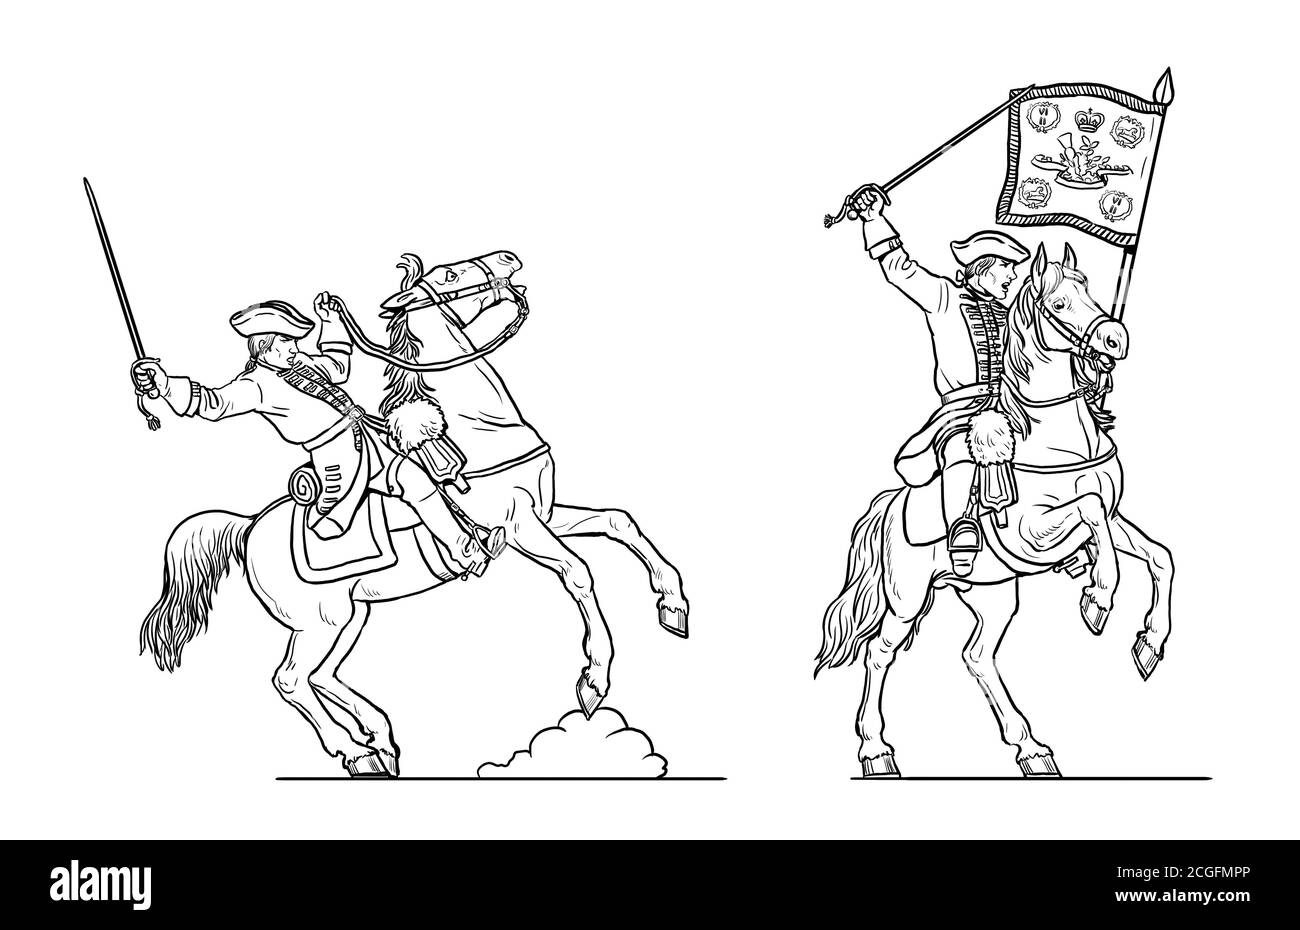 Kavallerie-Angriff. Englische Dragoner Zeichnung. Historische Zeichnung des Siebenjährigen Krieges. Stockfoto